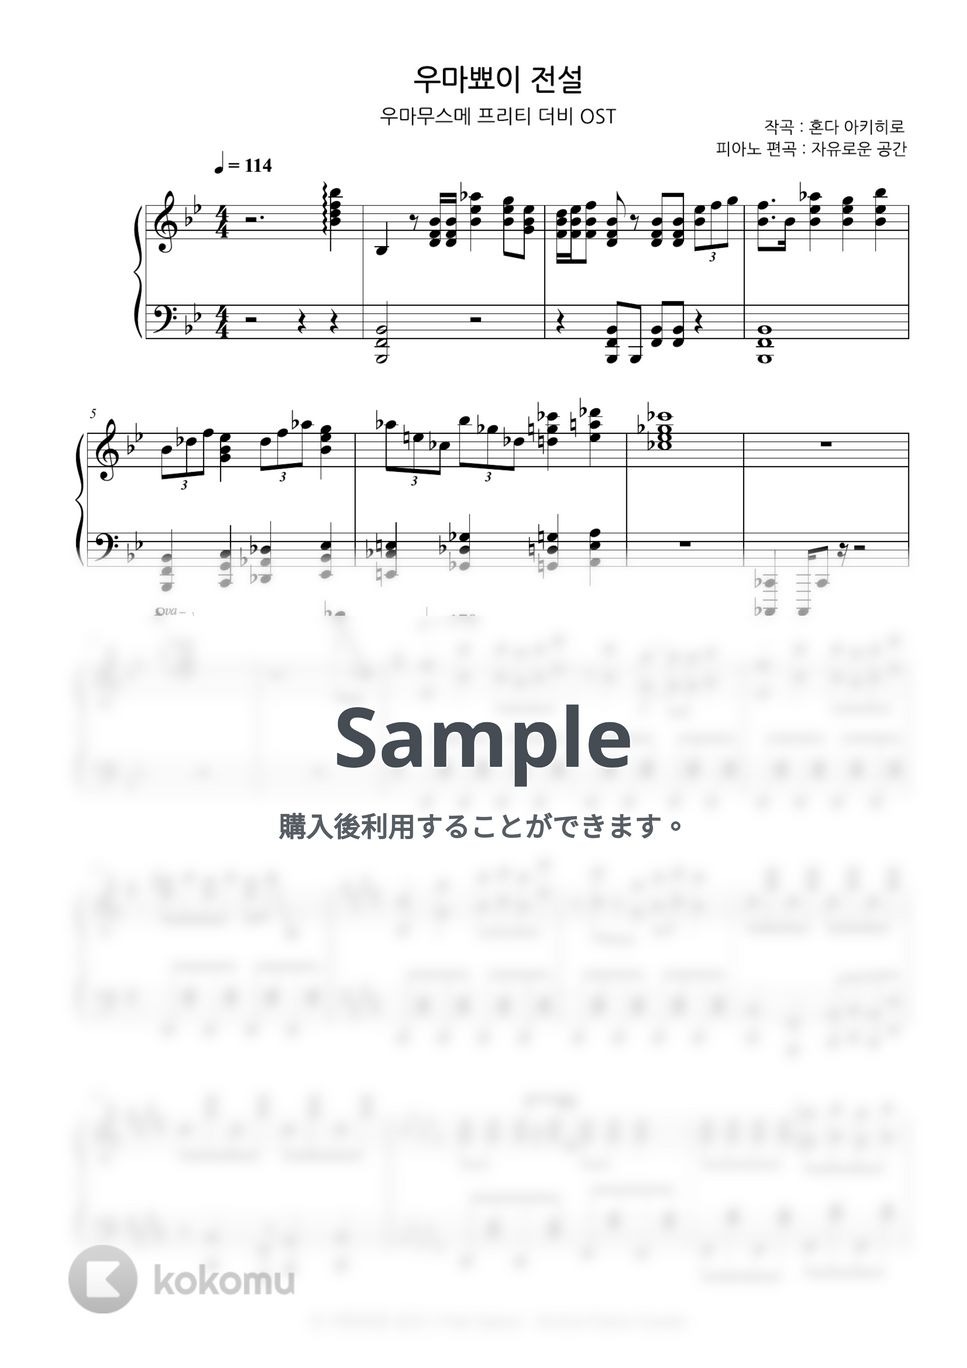 本田晃弘 - うまぴょい伝説 (ウマ娘 プリティーダービー OST) by Free Space / Anime Piano Covers